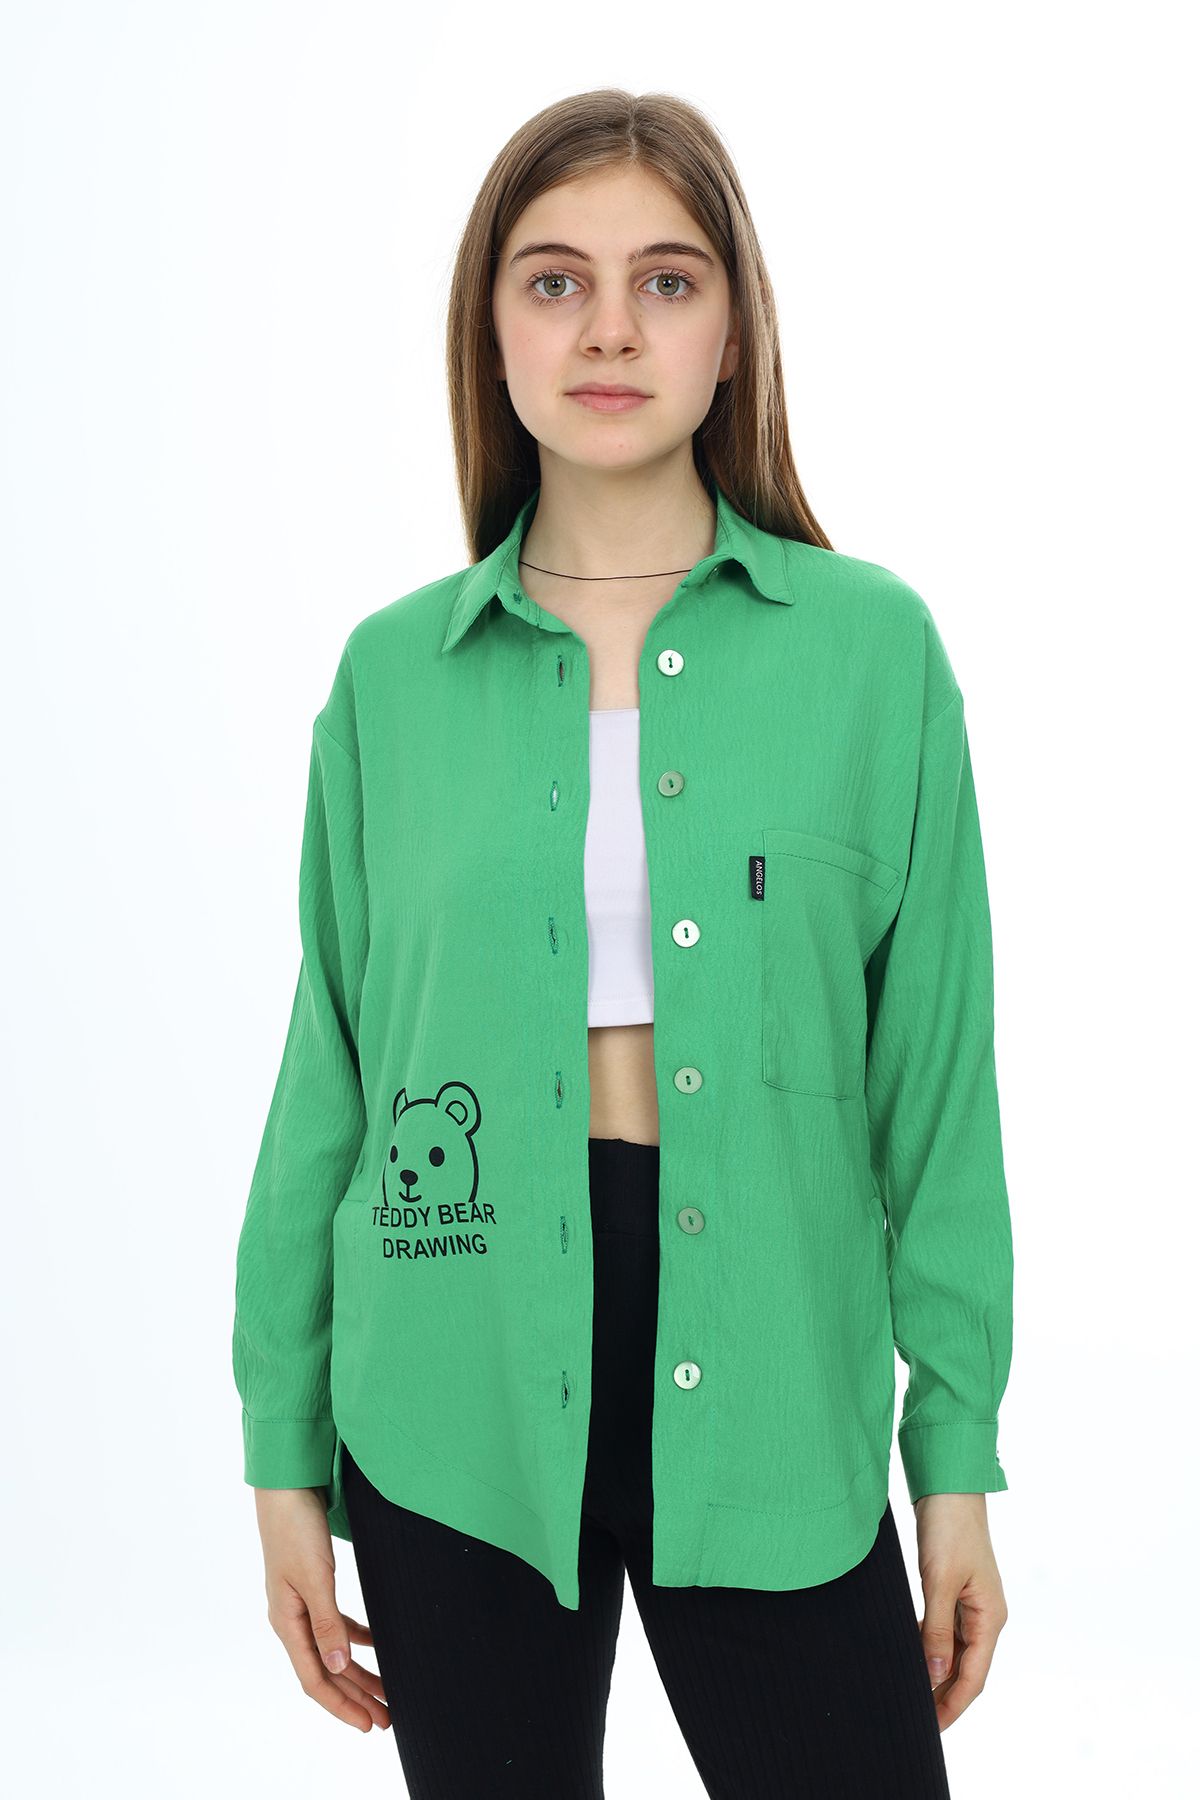 Cansın Mini Yeşil Ayıcık Baskılı Yırtmaçlı Kız Çocuk Düğmeli Gömlek 18416